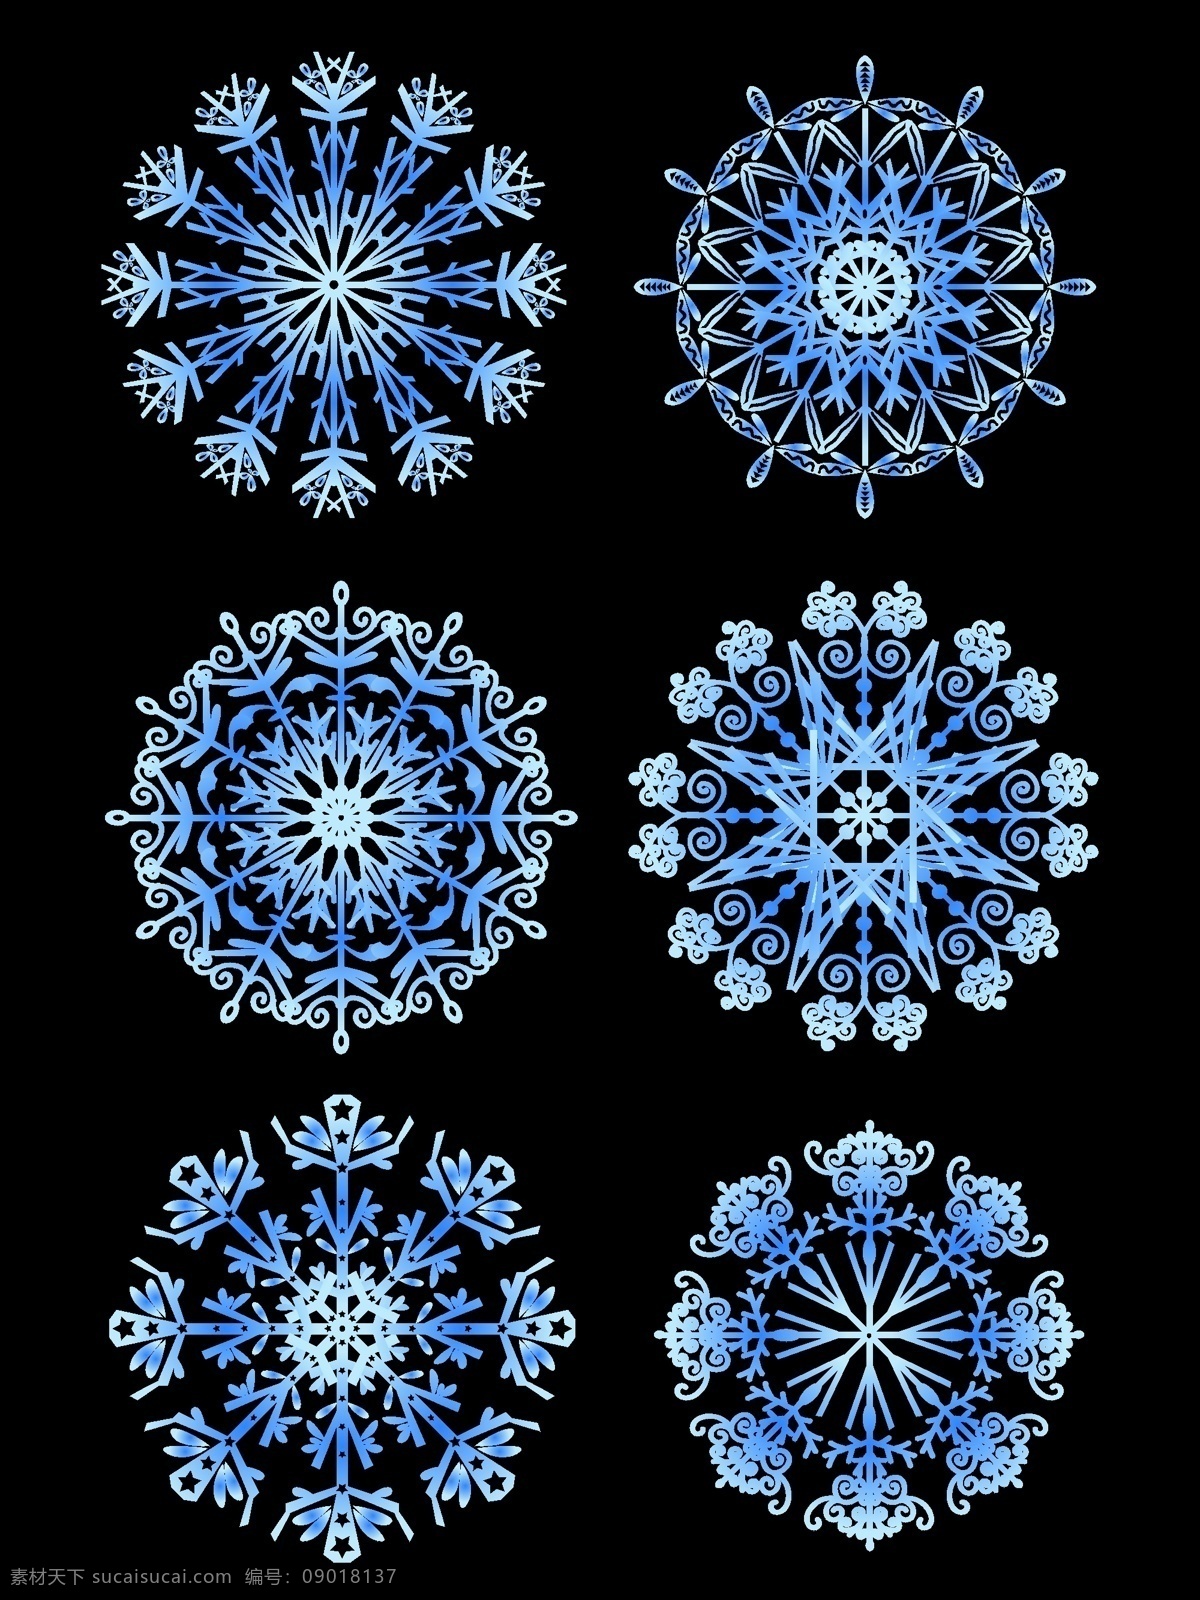 大气 矢量 蓝色 渐变 冬季 雪花 元素 套 图 矢量元素 蓝色渐变 冬季雪花 雪花元素 冬季元素